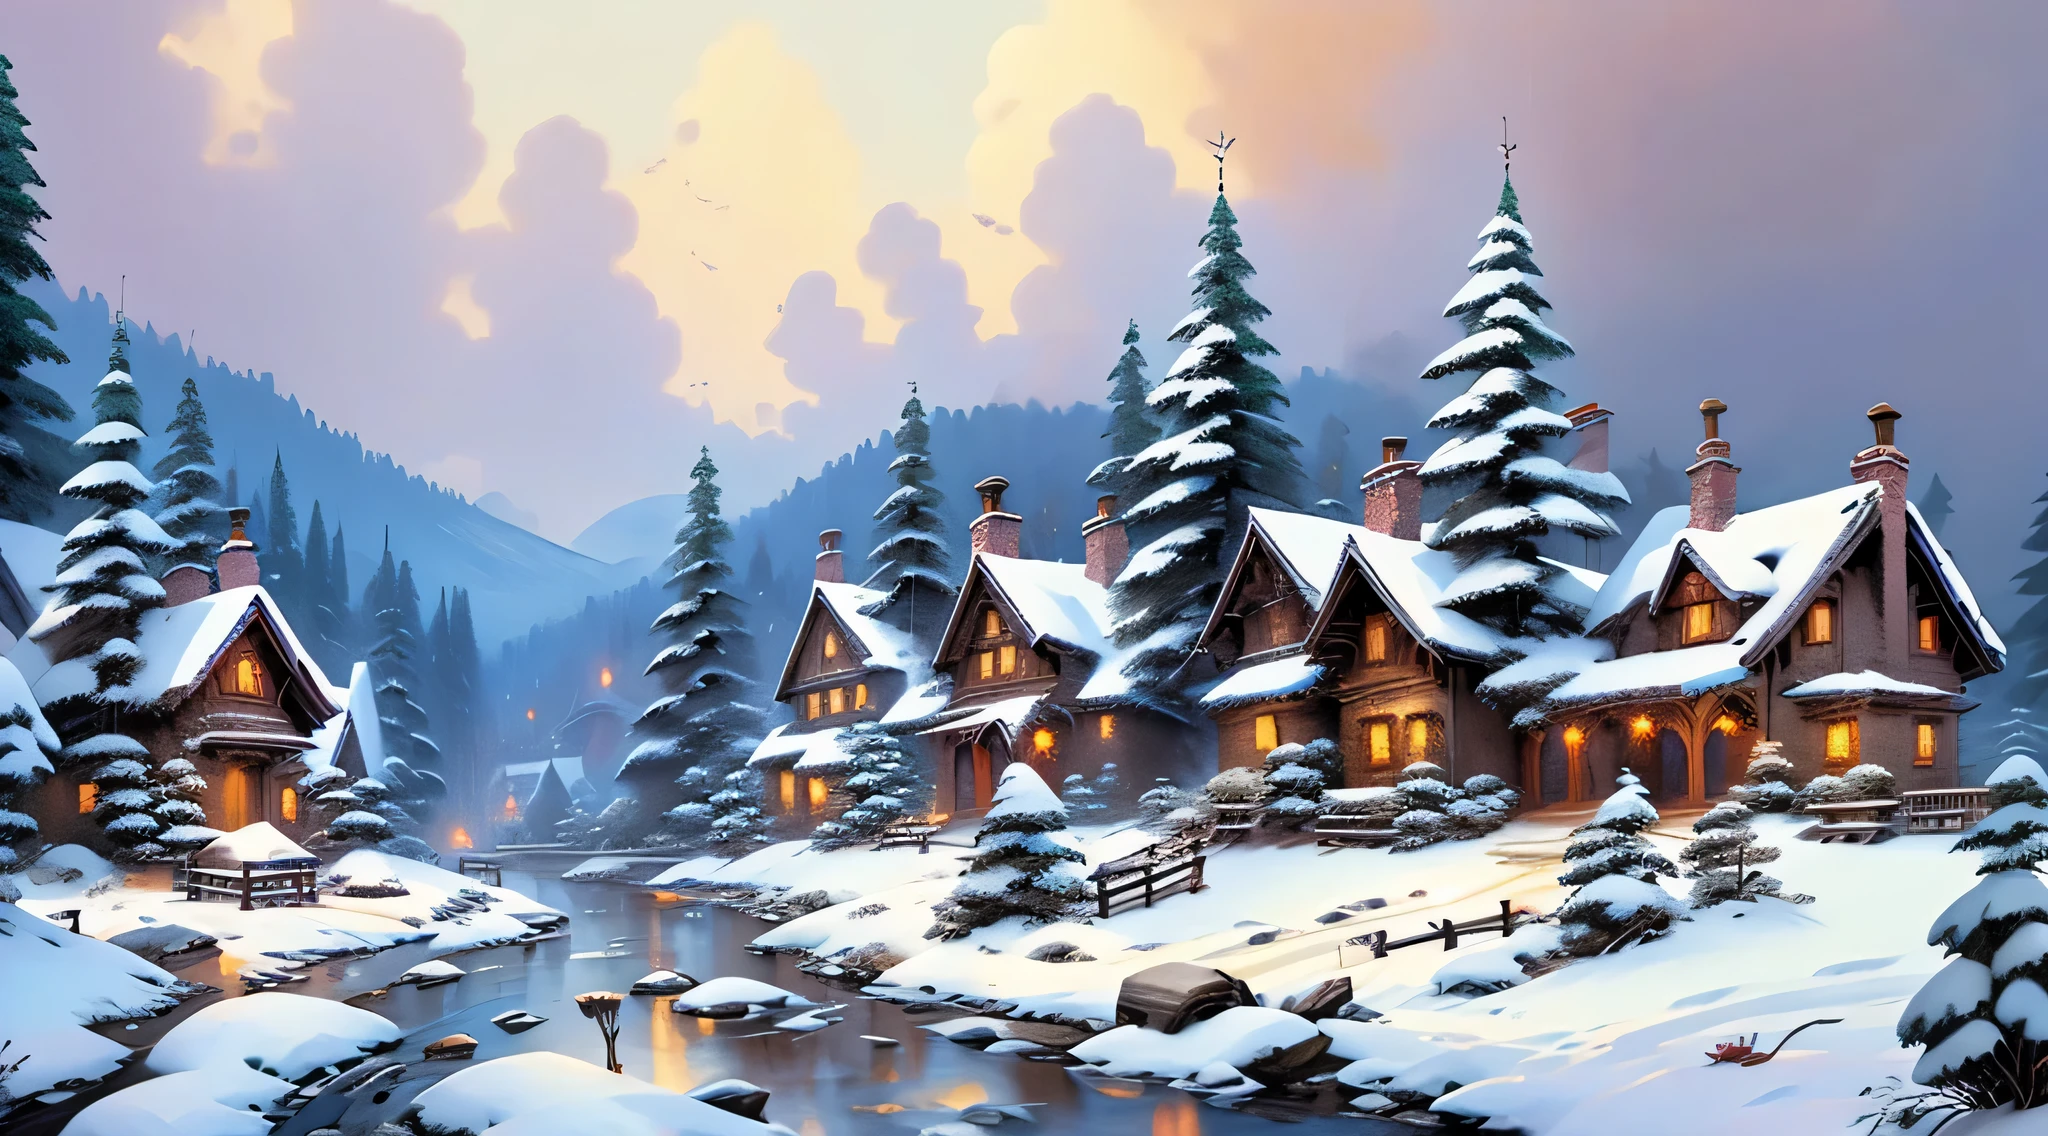 verschneites Dorf, Häuser mit Schnee bedeckt, schneebedeckte Bäume, gute Qualität, Aufwendige Darstellungen, detaillierter Ausdruck